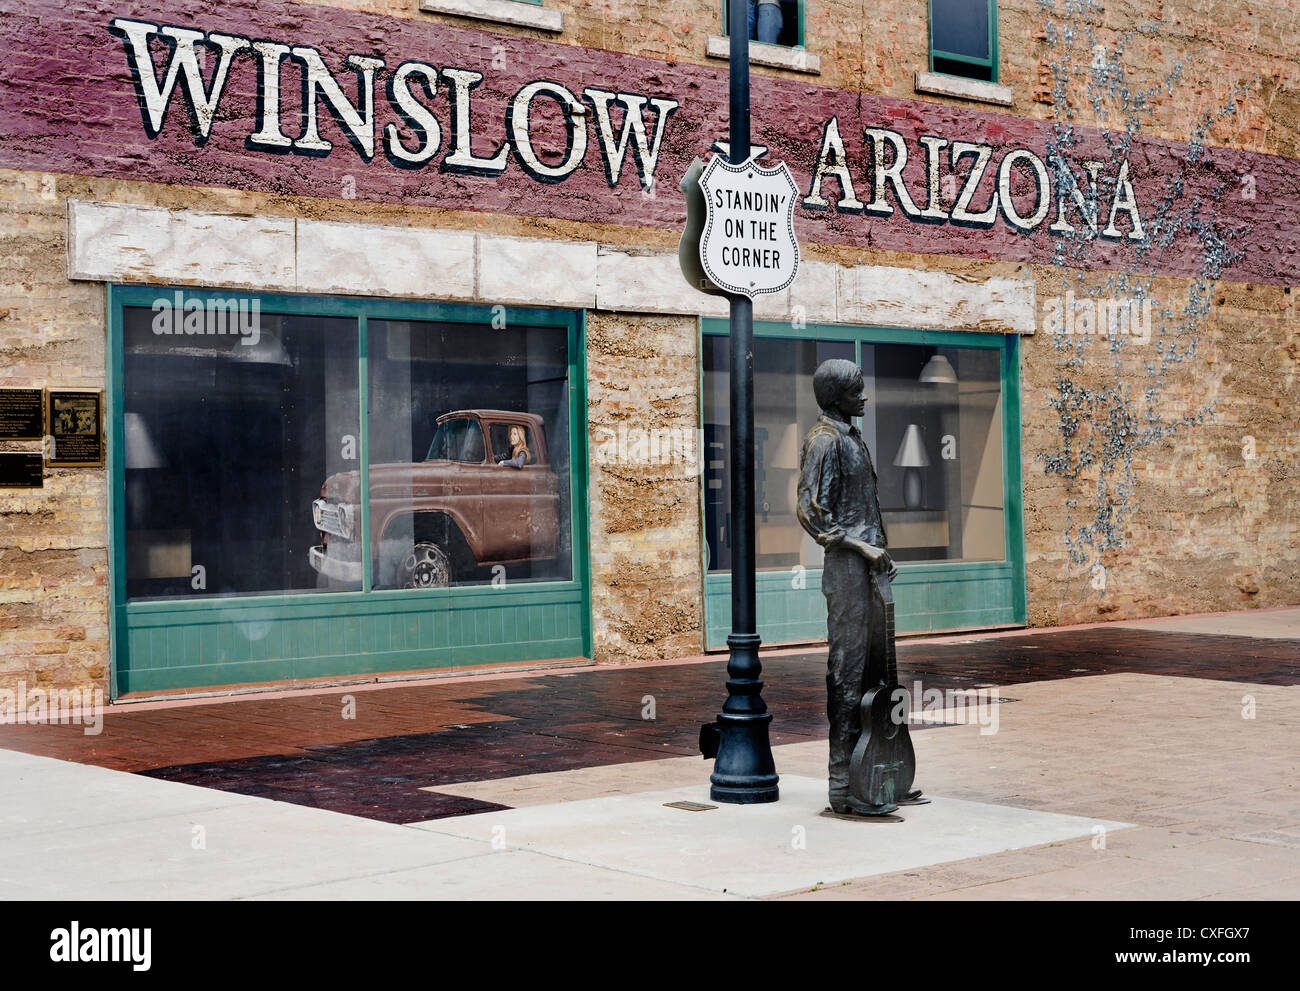 L'angolo di Winslow, Arizona come reso famoso attraverso le aquile' 'Take it easy' canzone. Foto Stock